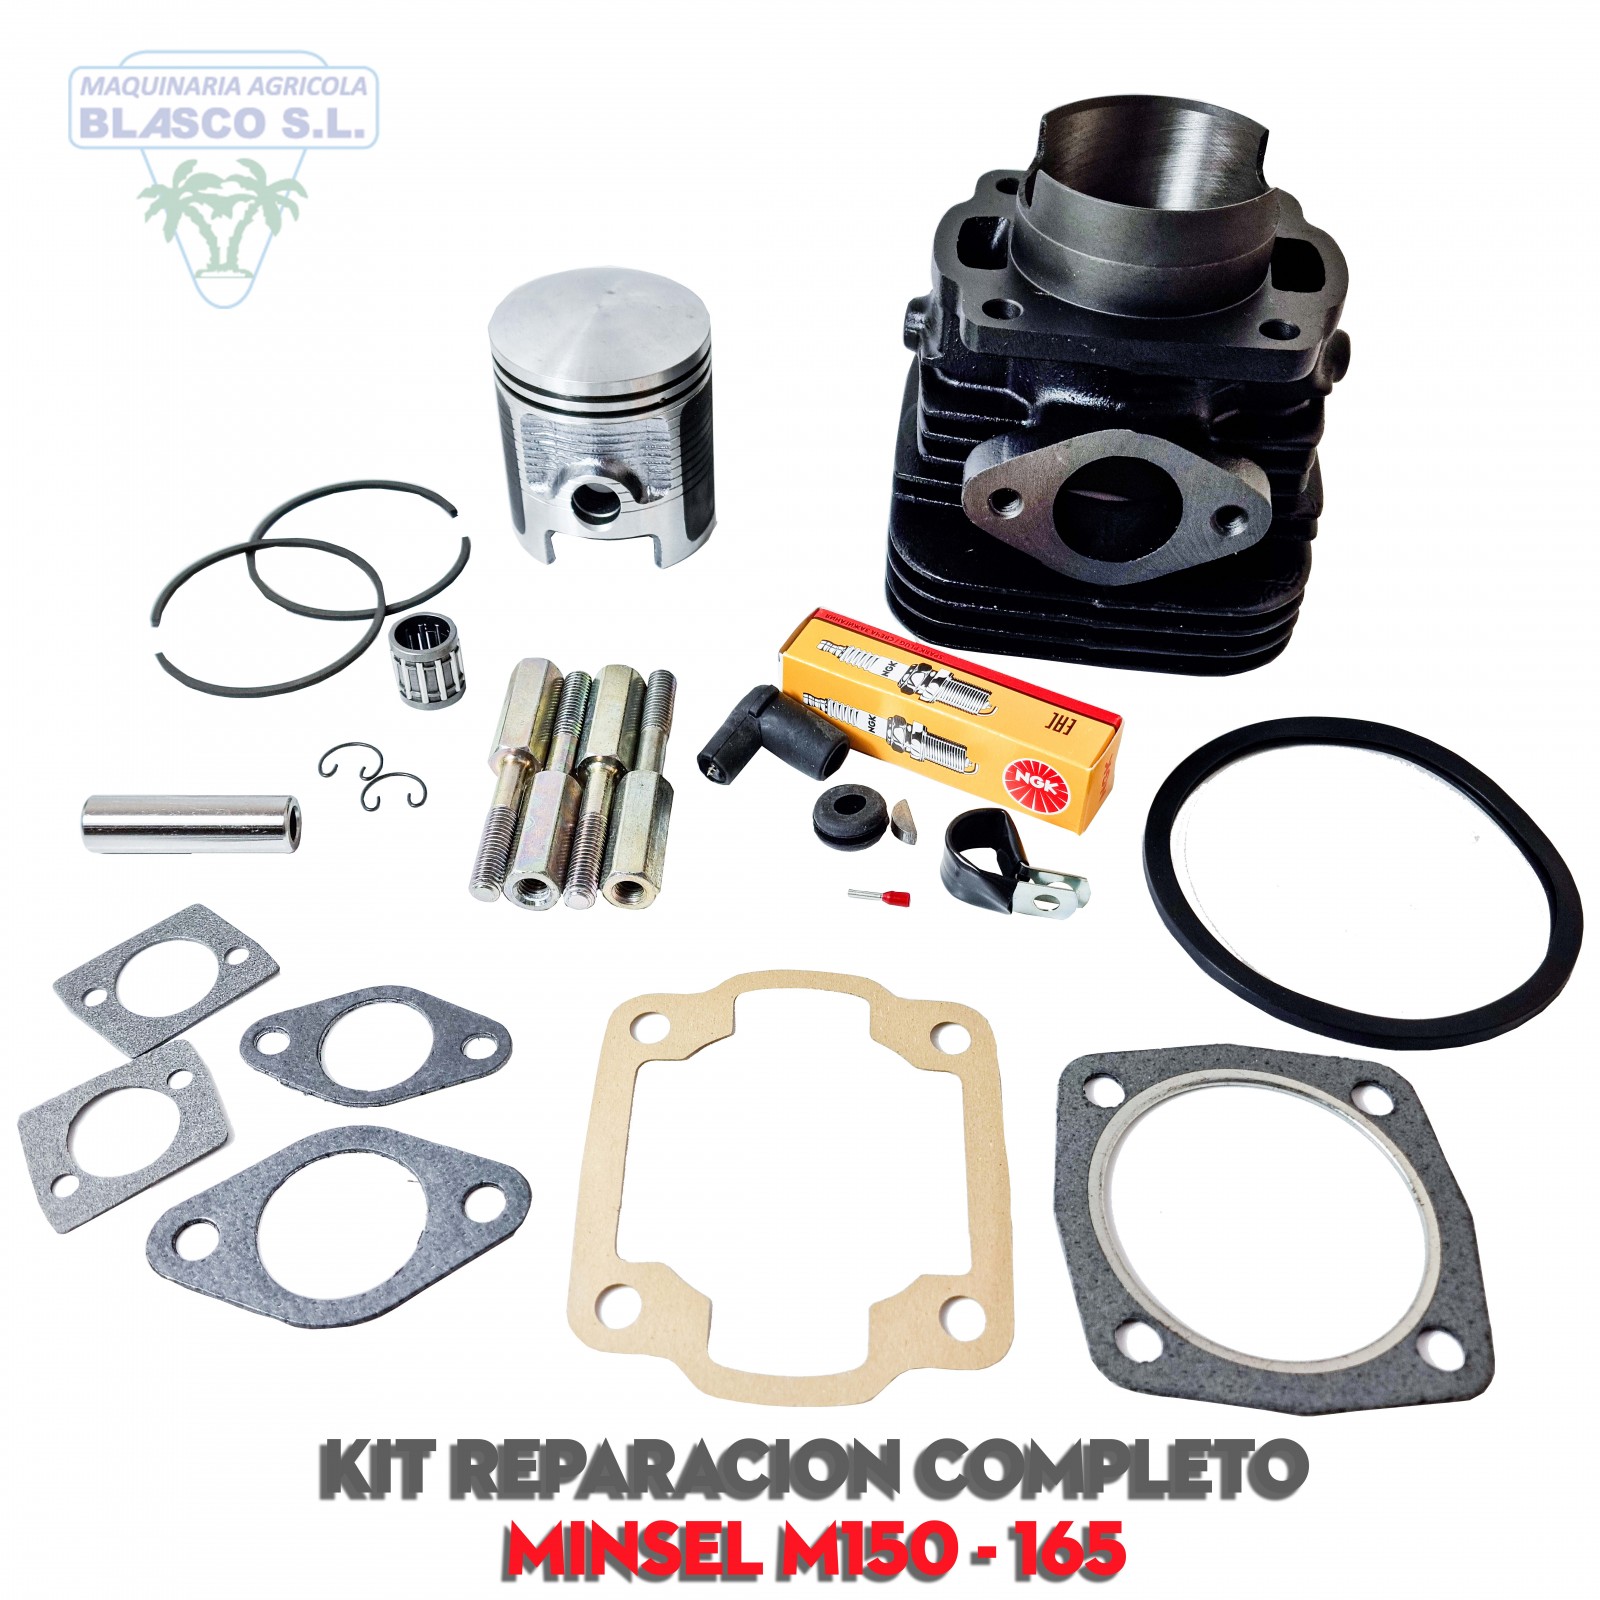 Kit cilindro piston para motores Minsel Gasolina M150 Montados en motoazadas y motocultores Agria, Mollón, Truss, Movicam, Conesa, Pasquali, Lander, Alfa ...